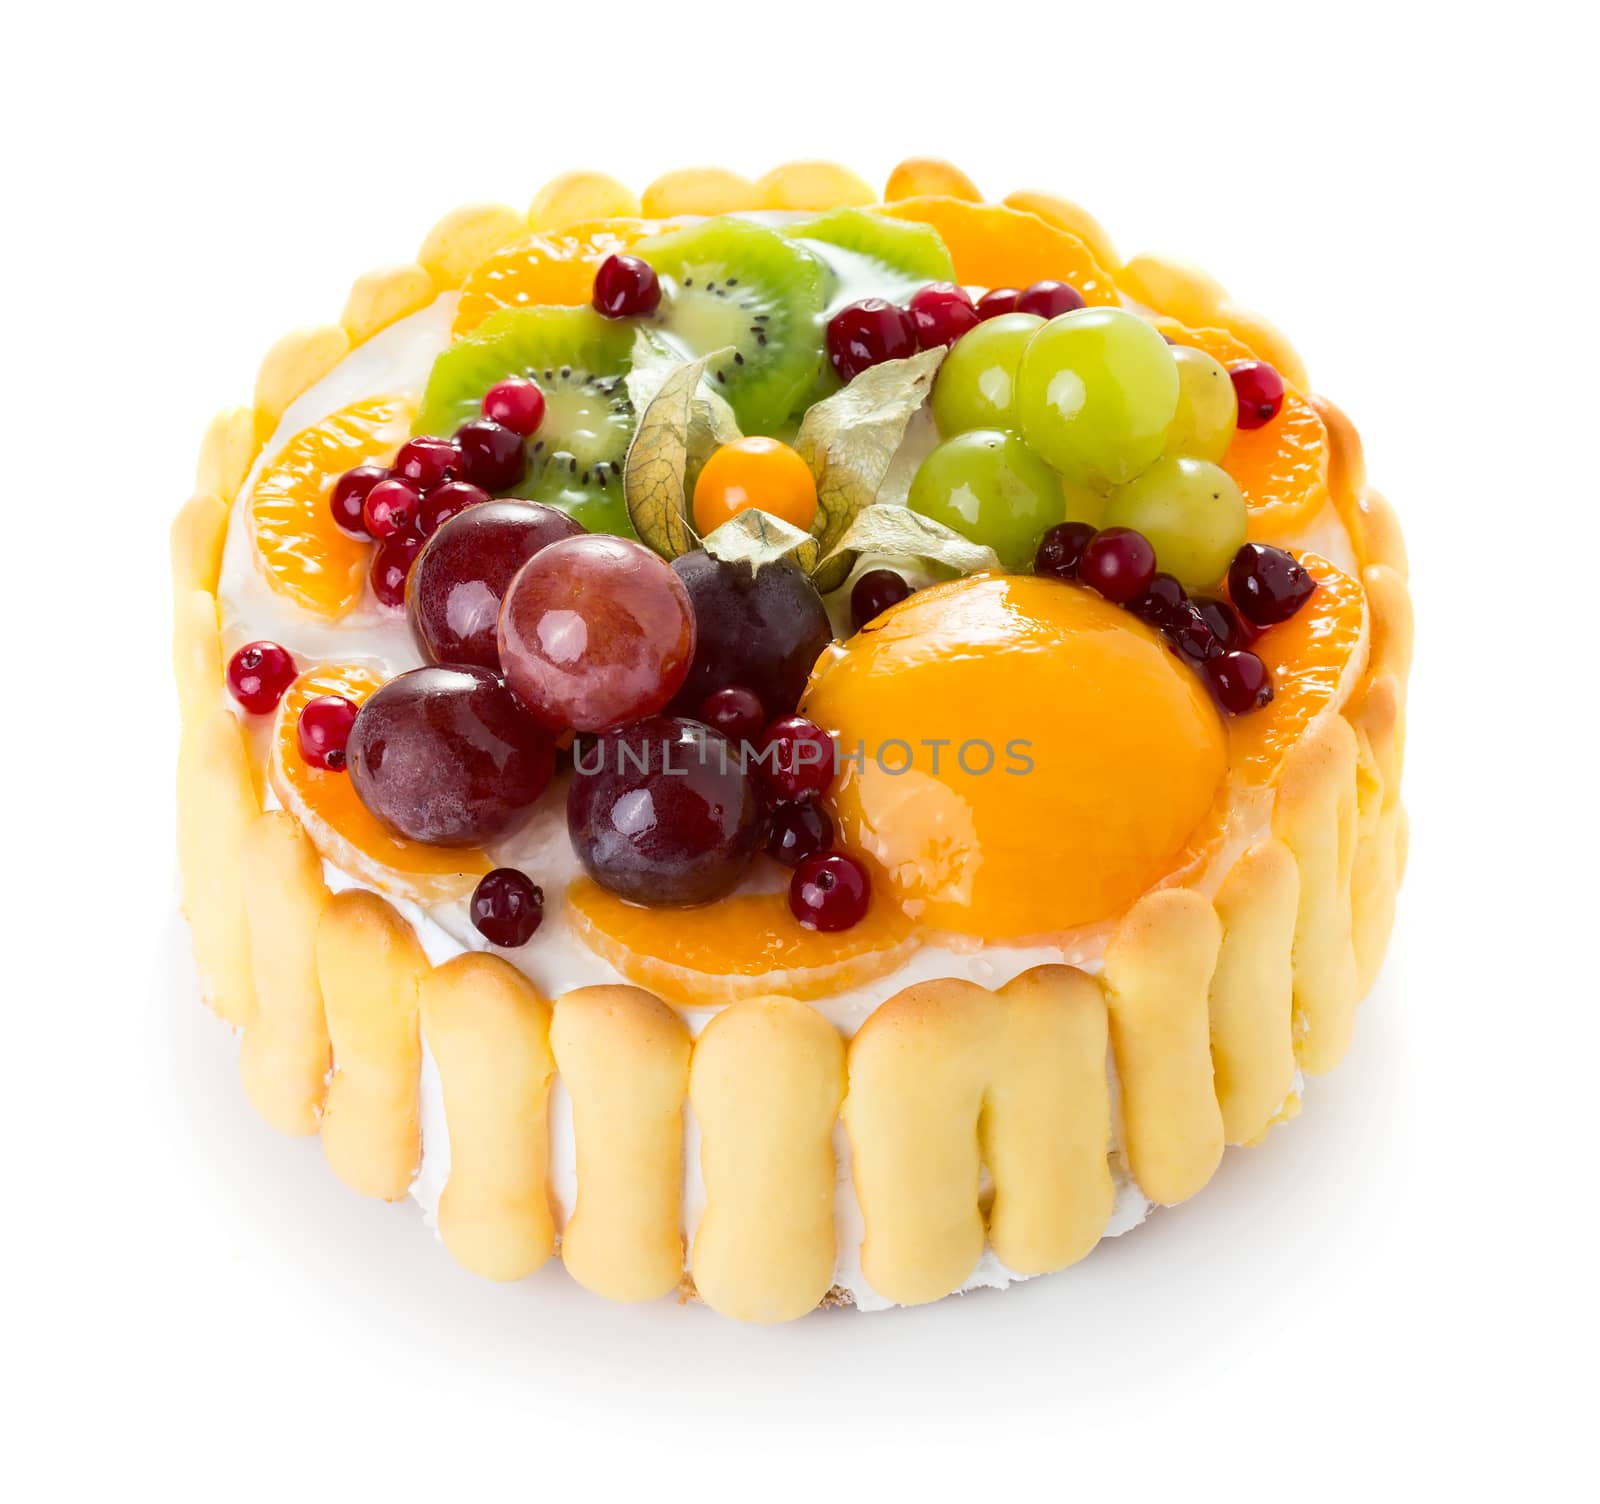 Jelly fruit cake isolated on white background